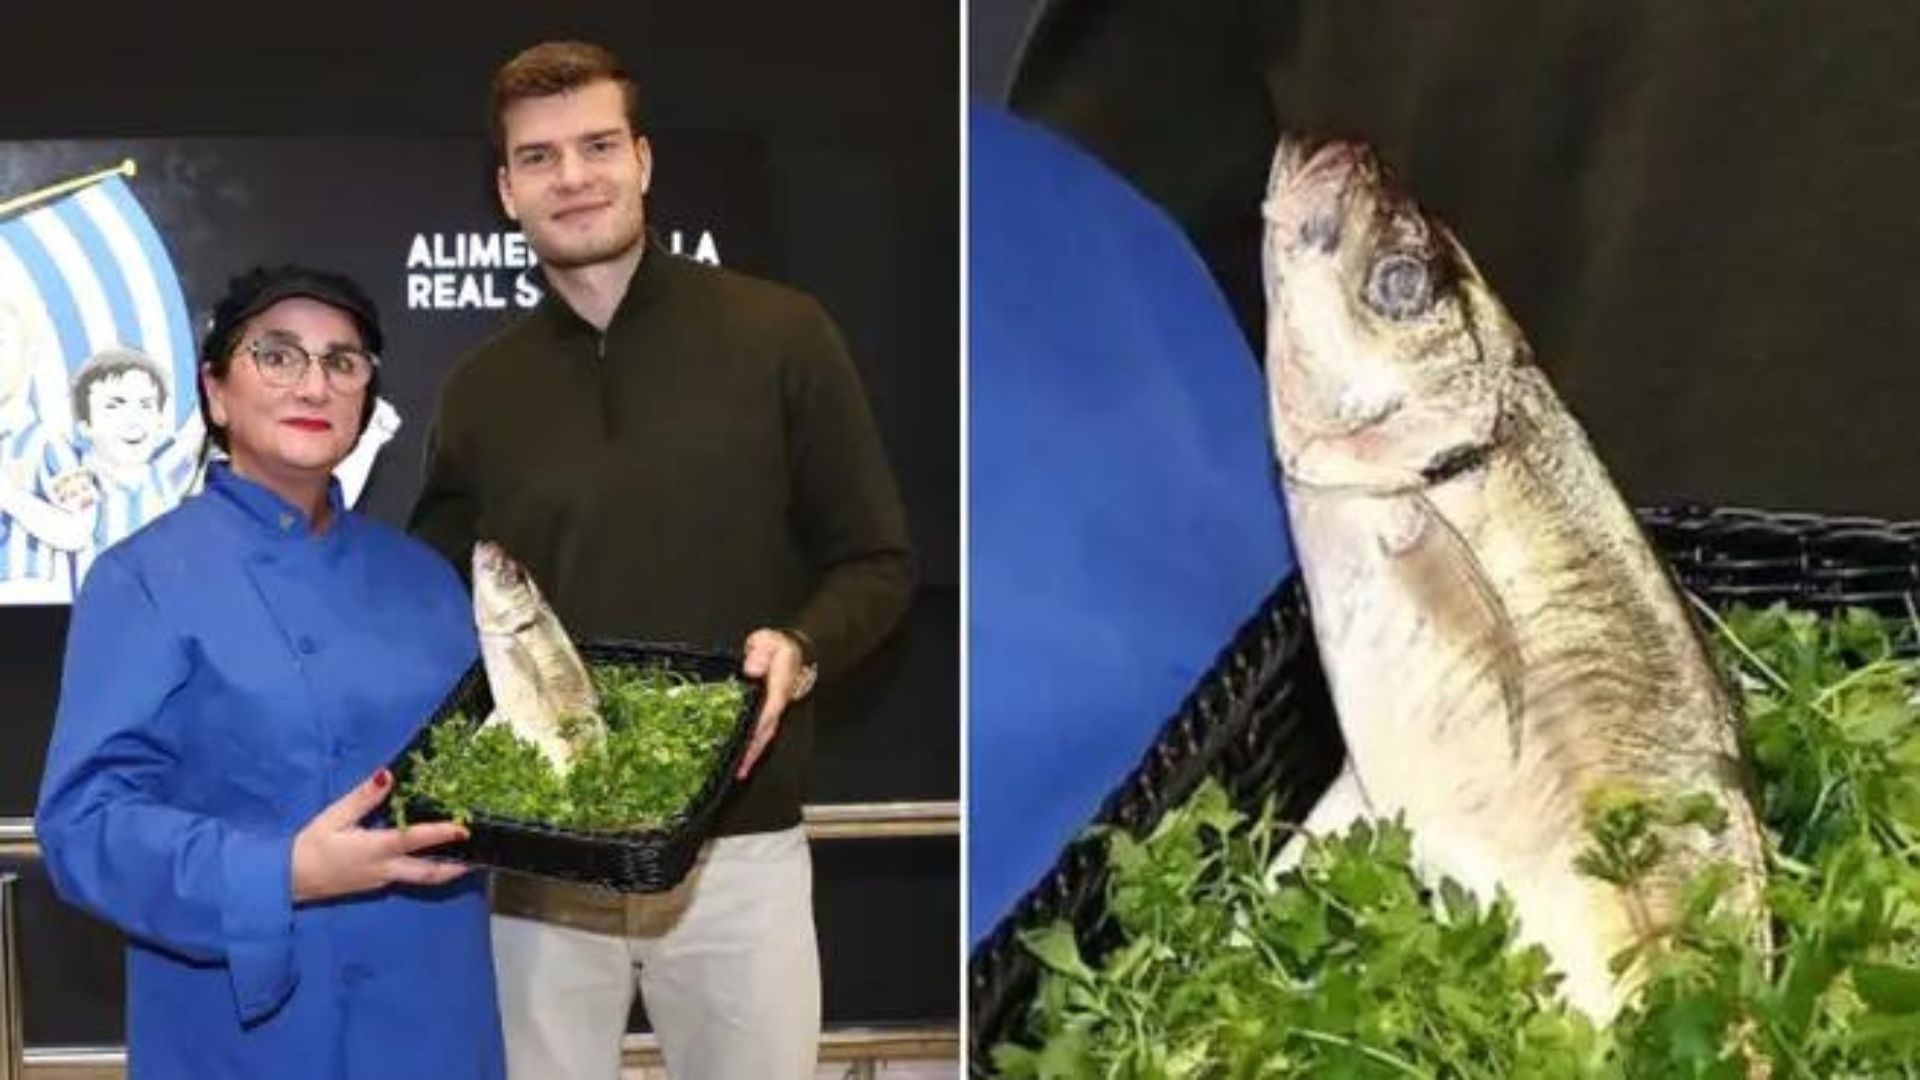 Sorloth norway Bintang Norway Terima Seekor Ikan, Ganjaran Pemain Terbaik Bulanan Kelab